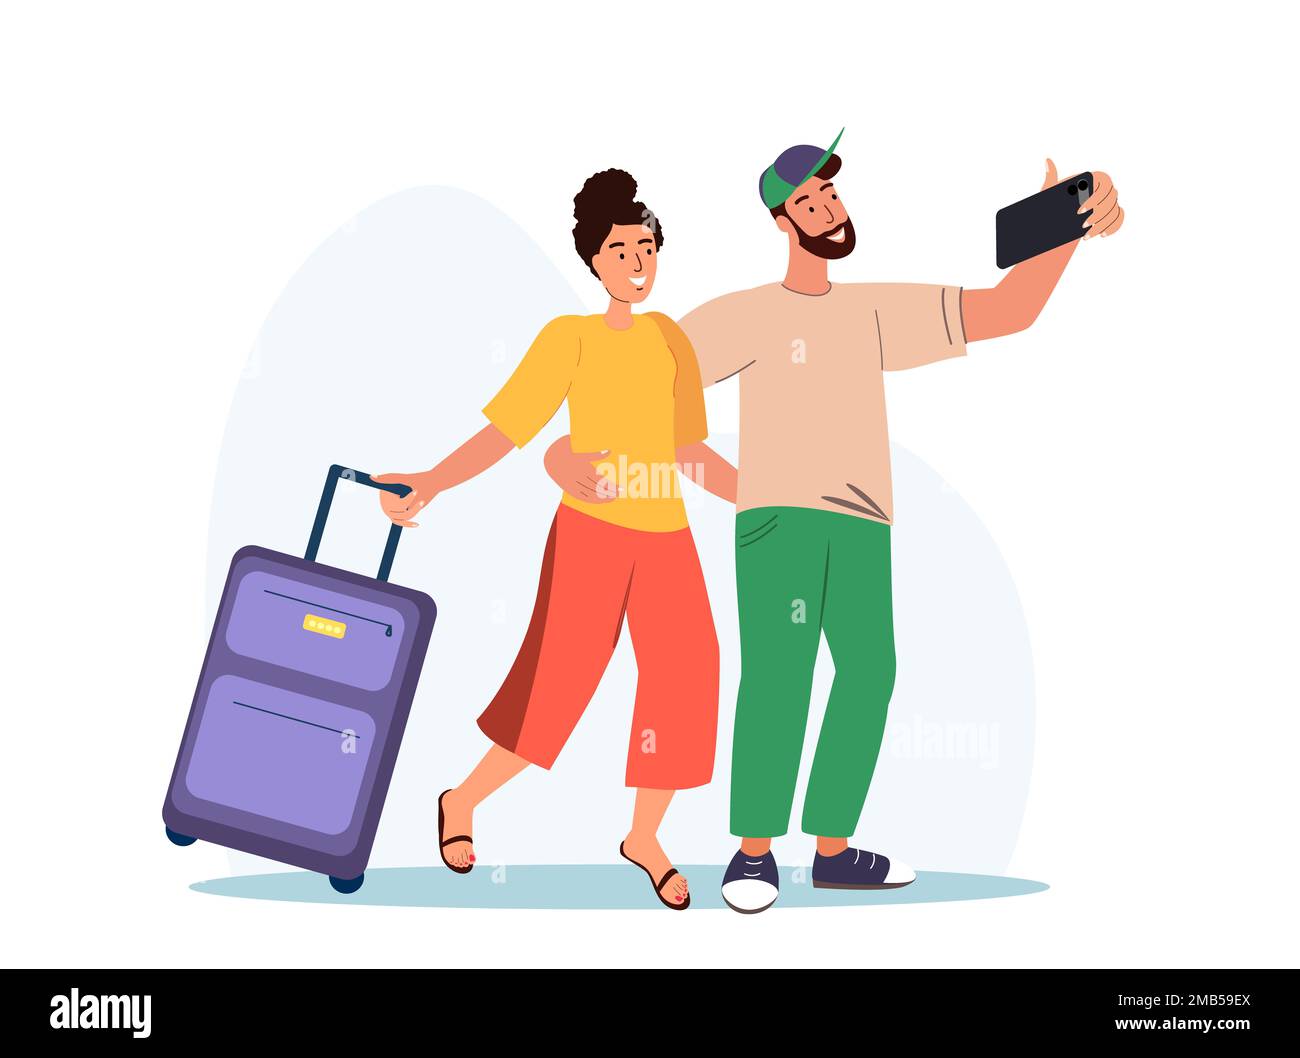 Familienausflug, Reisekonzept. Helles, glückliches romantisches Paar mit Koffer, das Selfie-Foto macht. Touristische Figuren, Gepäckboarden im Flugzeug, Reisender Stockfoto